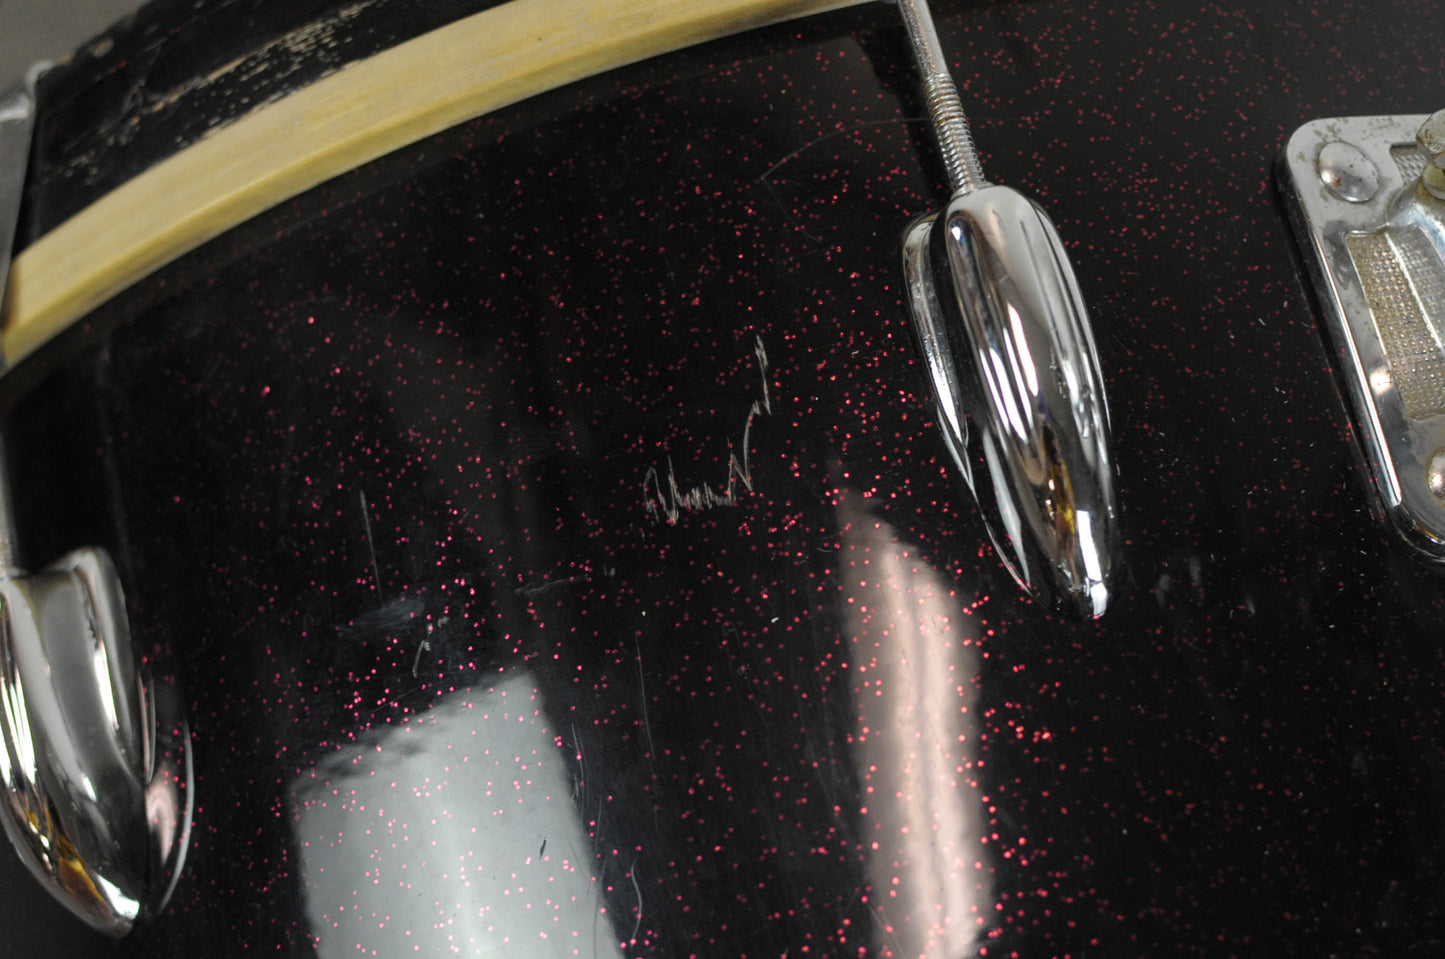 1965 Slingerland Gene Krupa Deluxe Black Sparkle Drum Set